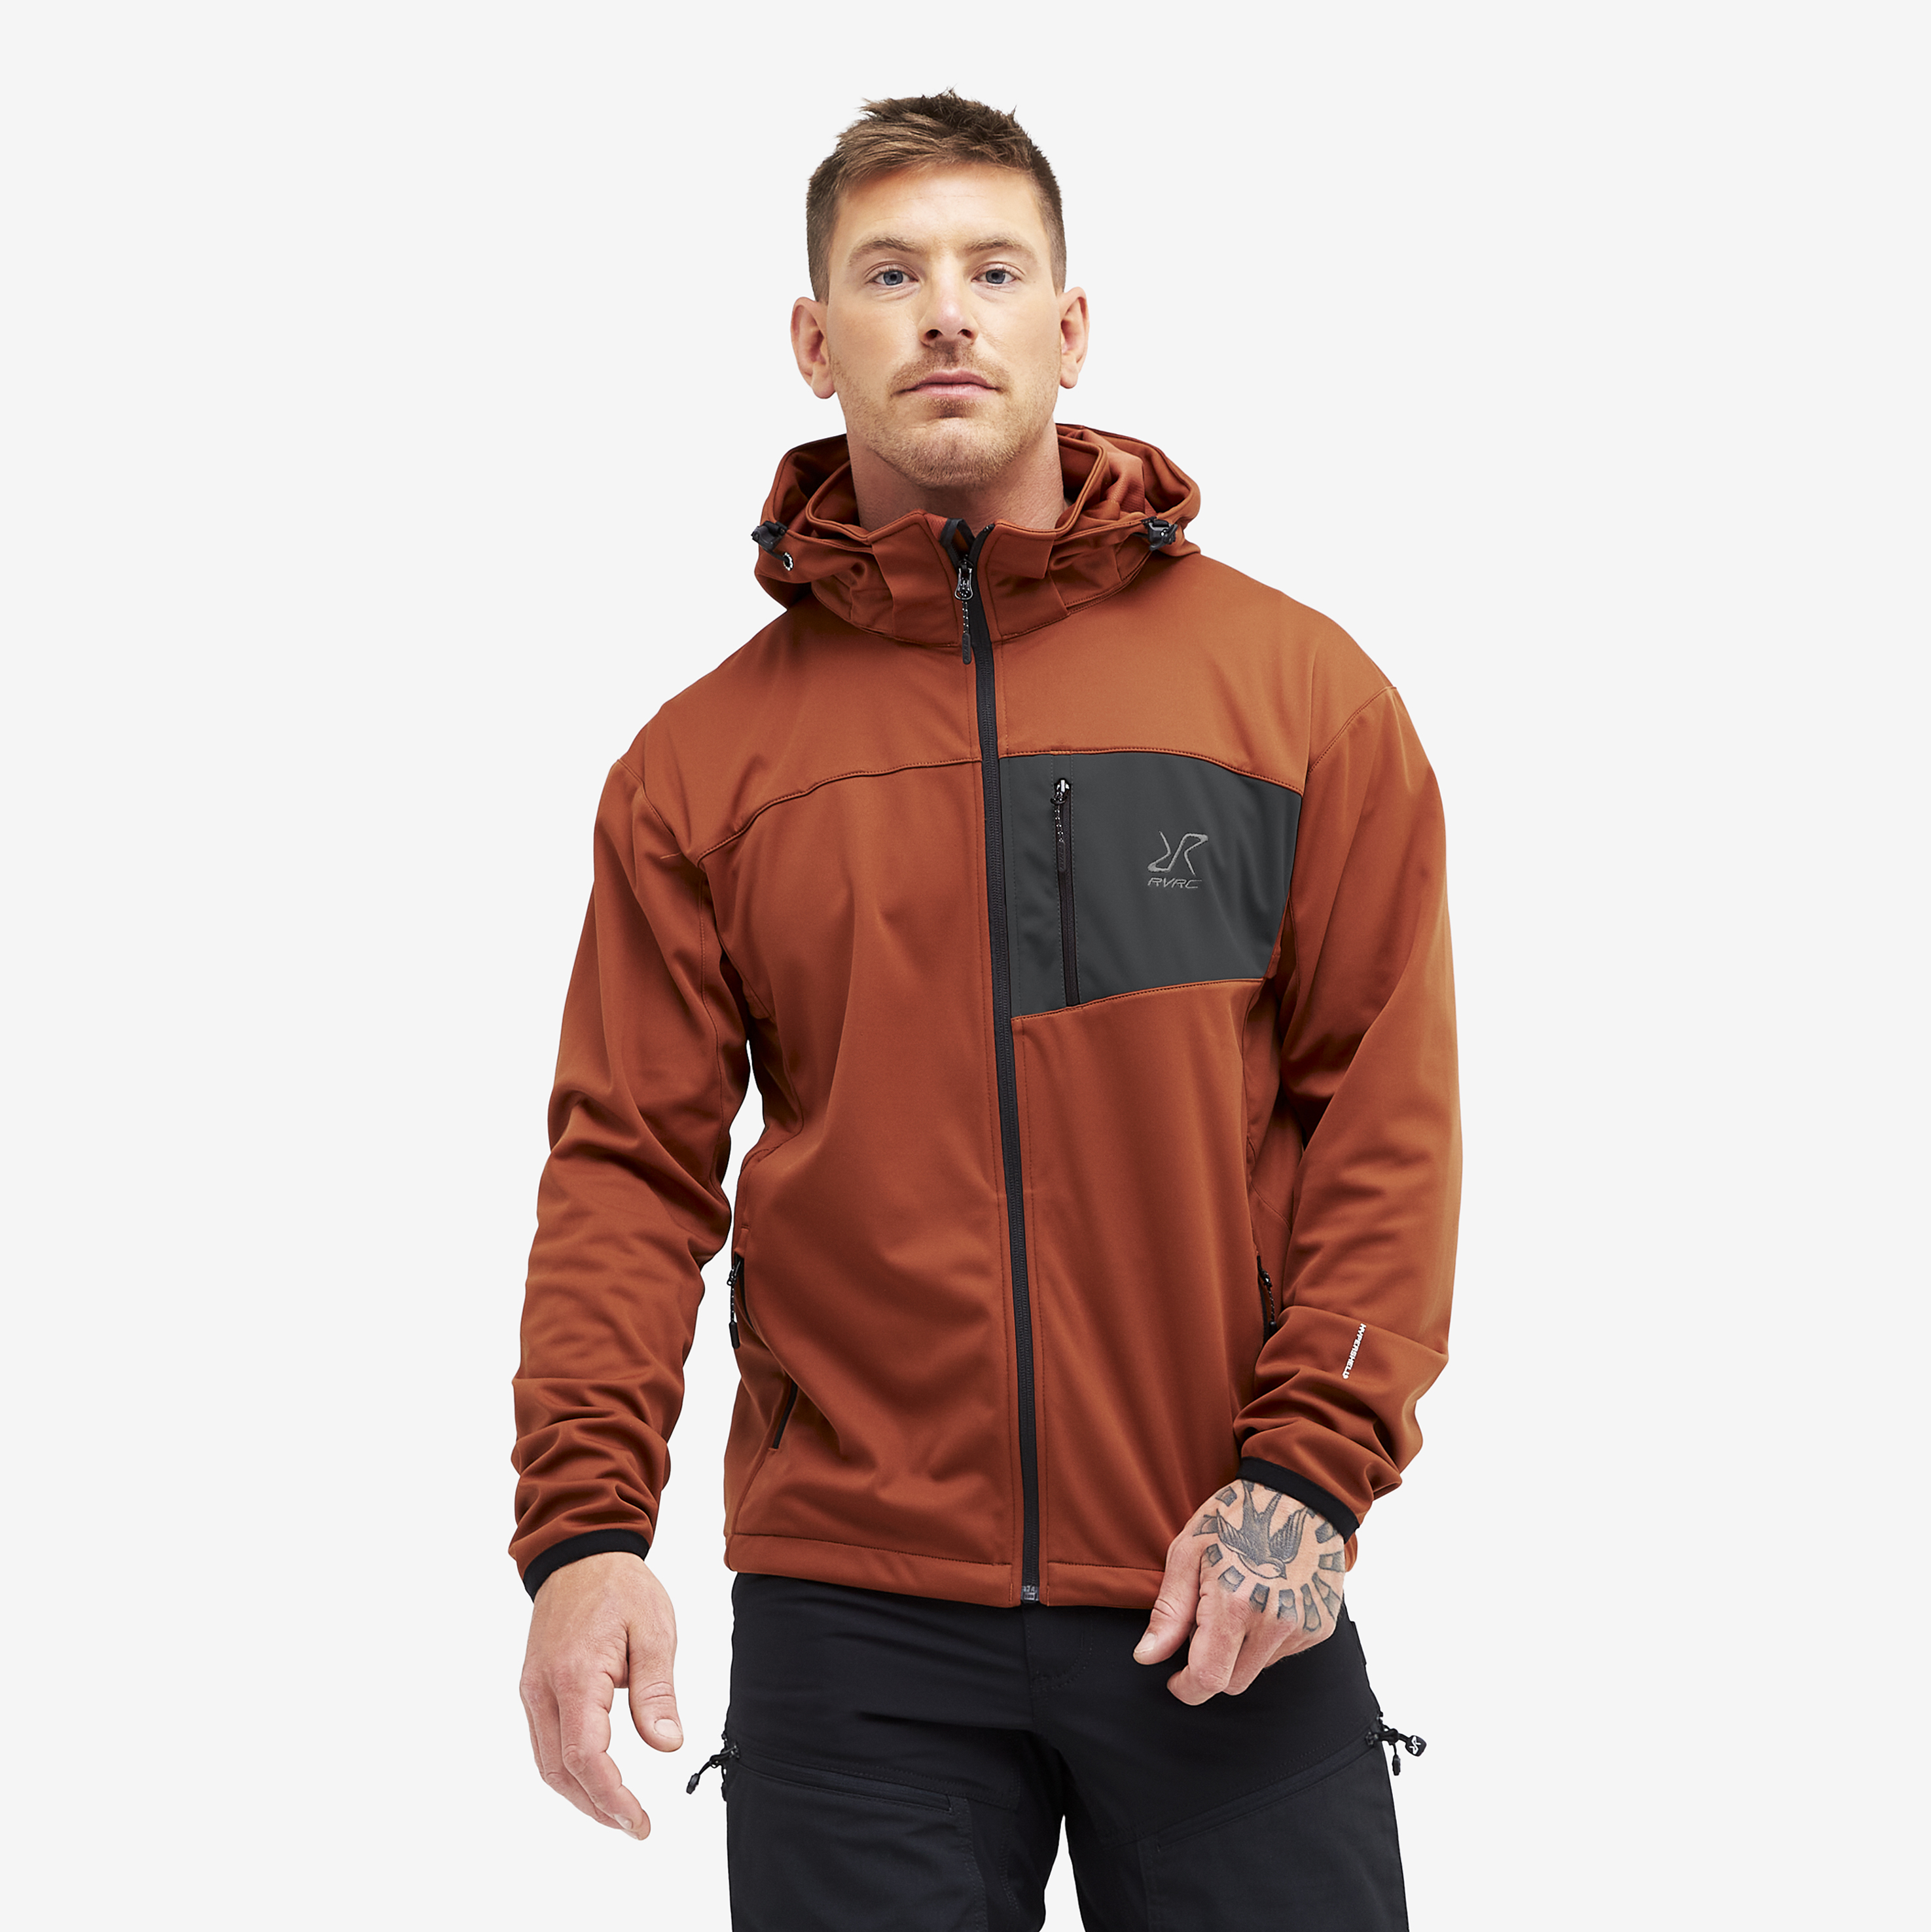 Hybrid Jacket 2.0 – Herr – Rusty Orange Storlek:L – Skaljacka & Vindjacka